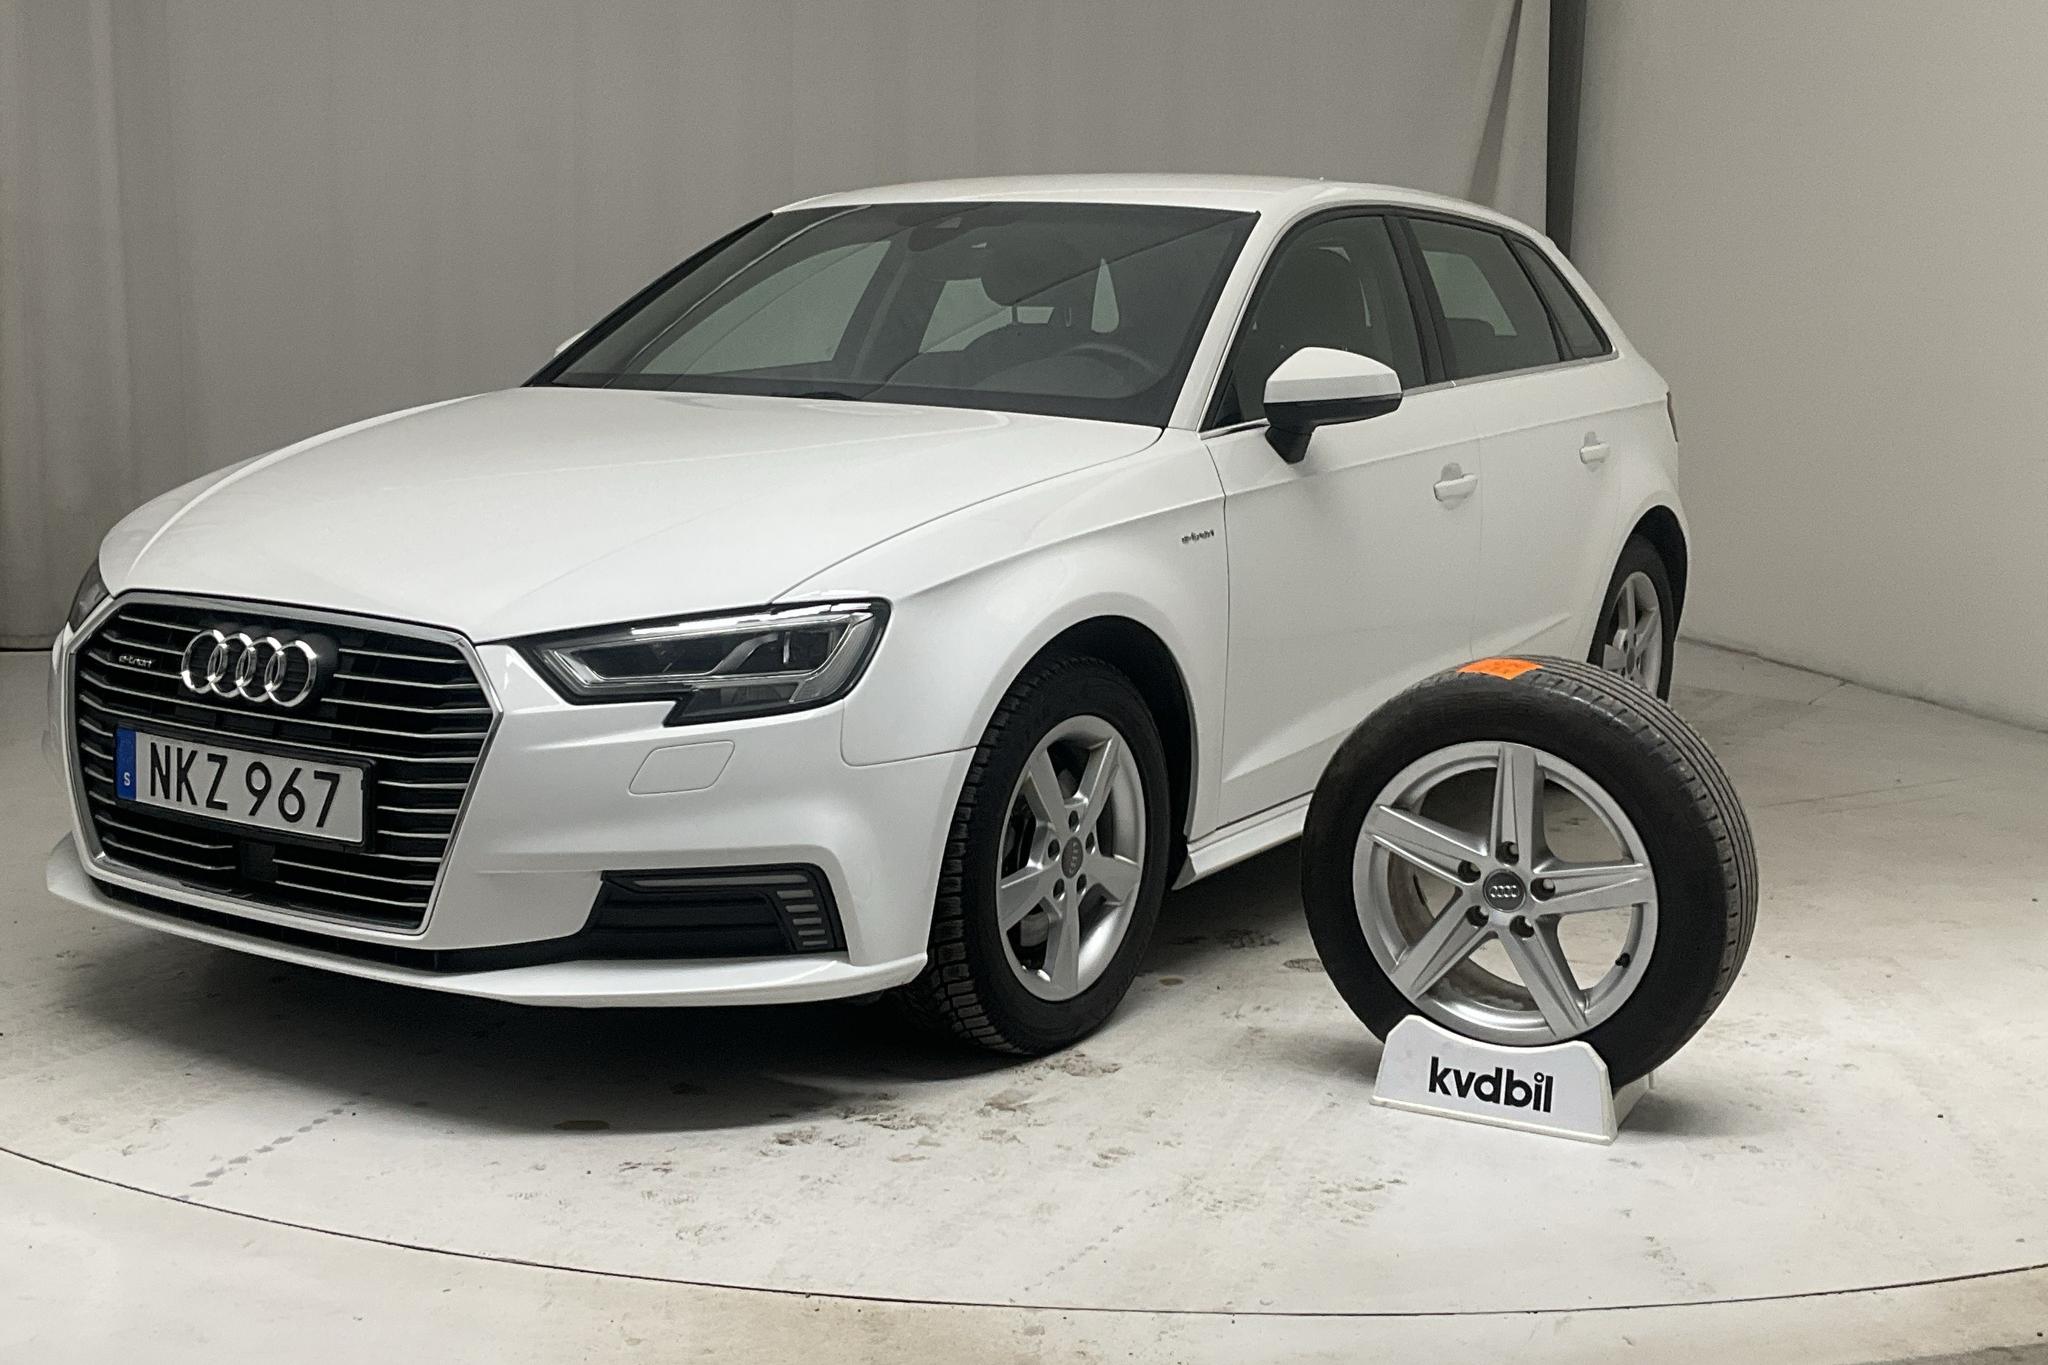 Audi A3 1.4 TFSI e-tron Sportback (150hk) - 71 390 km - Automatic - white - 2018